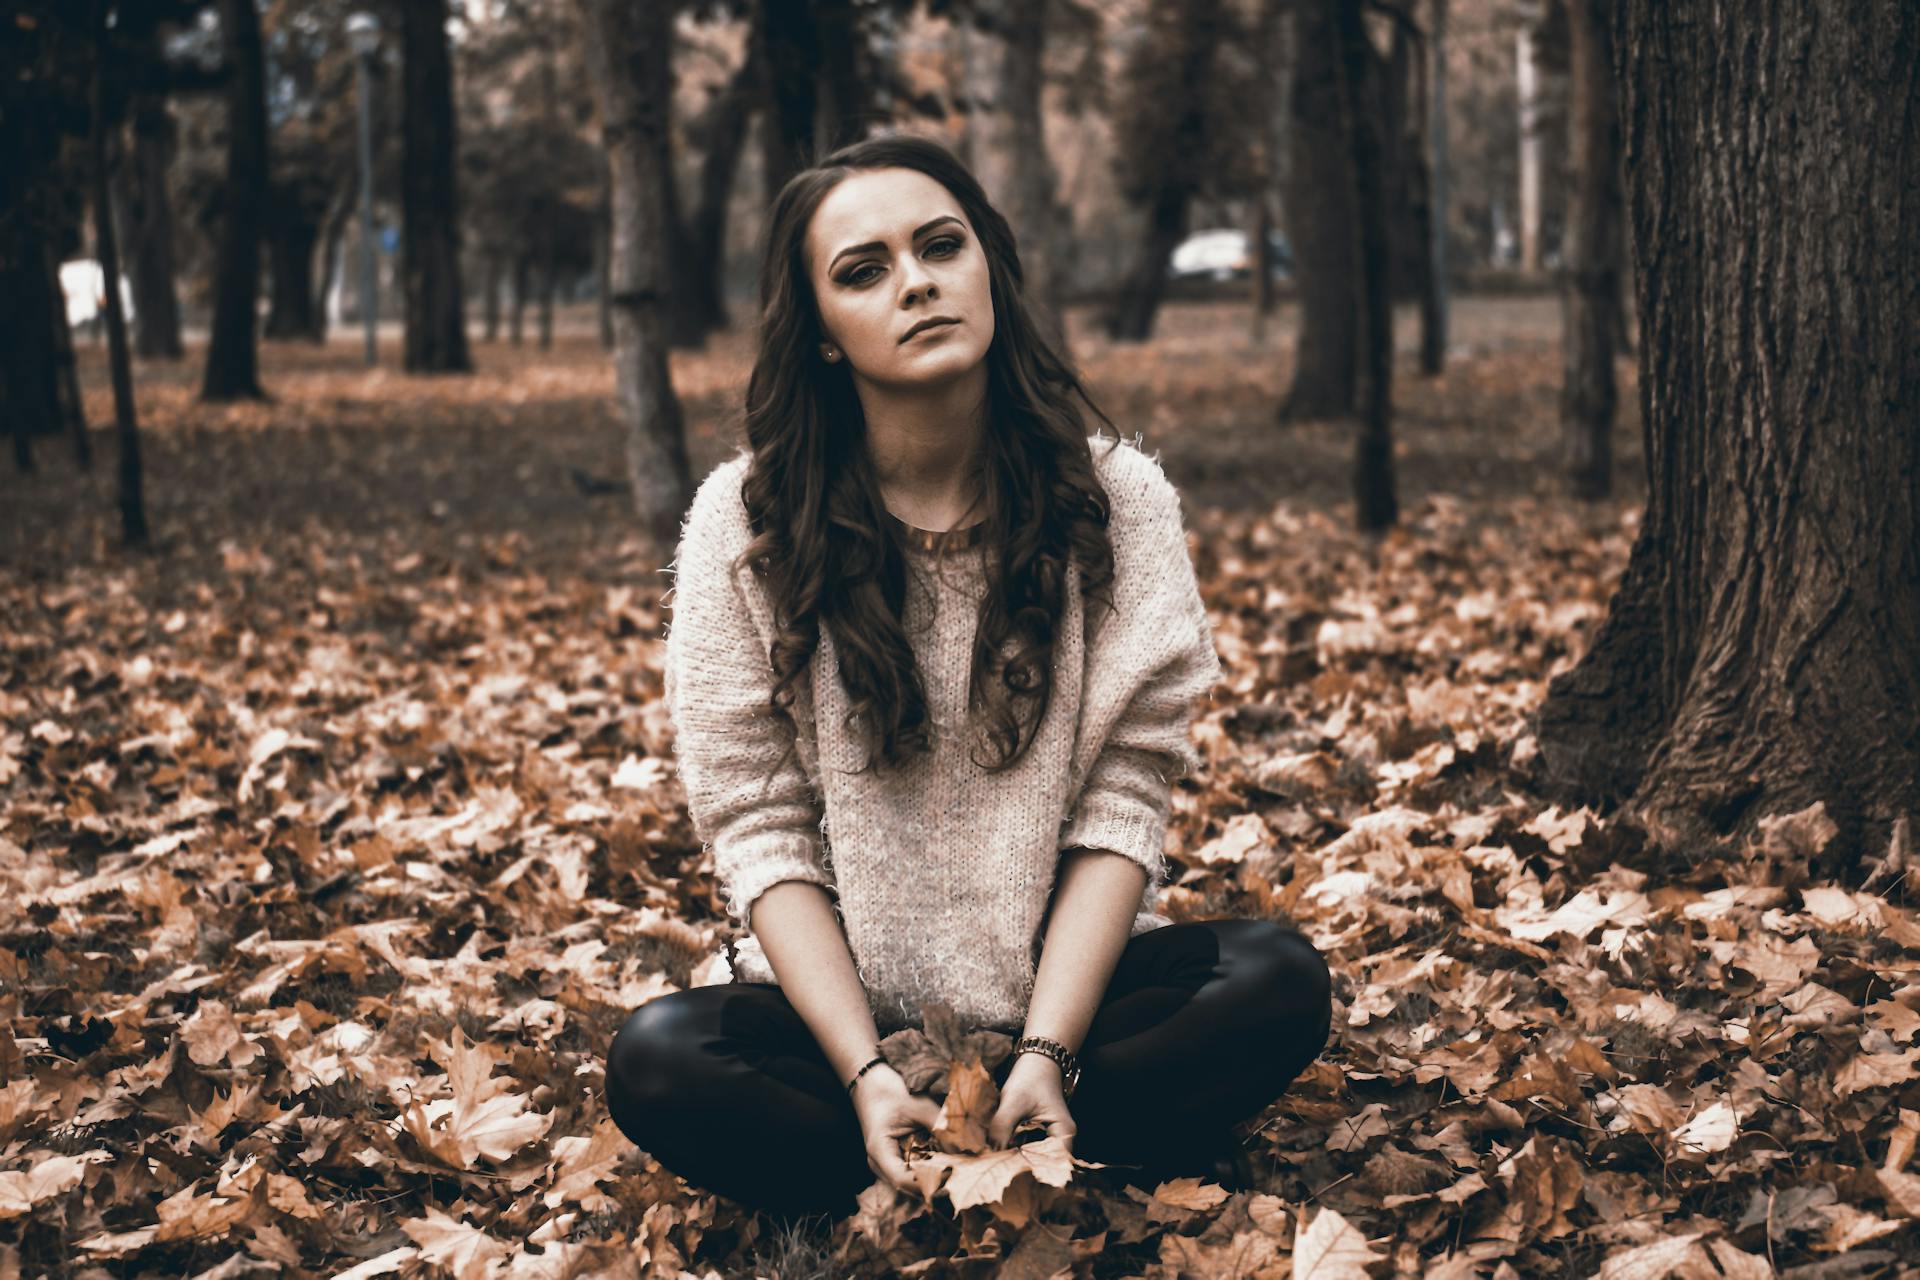 Una joven sentada en un bosque sujetando hojas caídas | Foto: Pexels